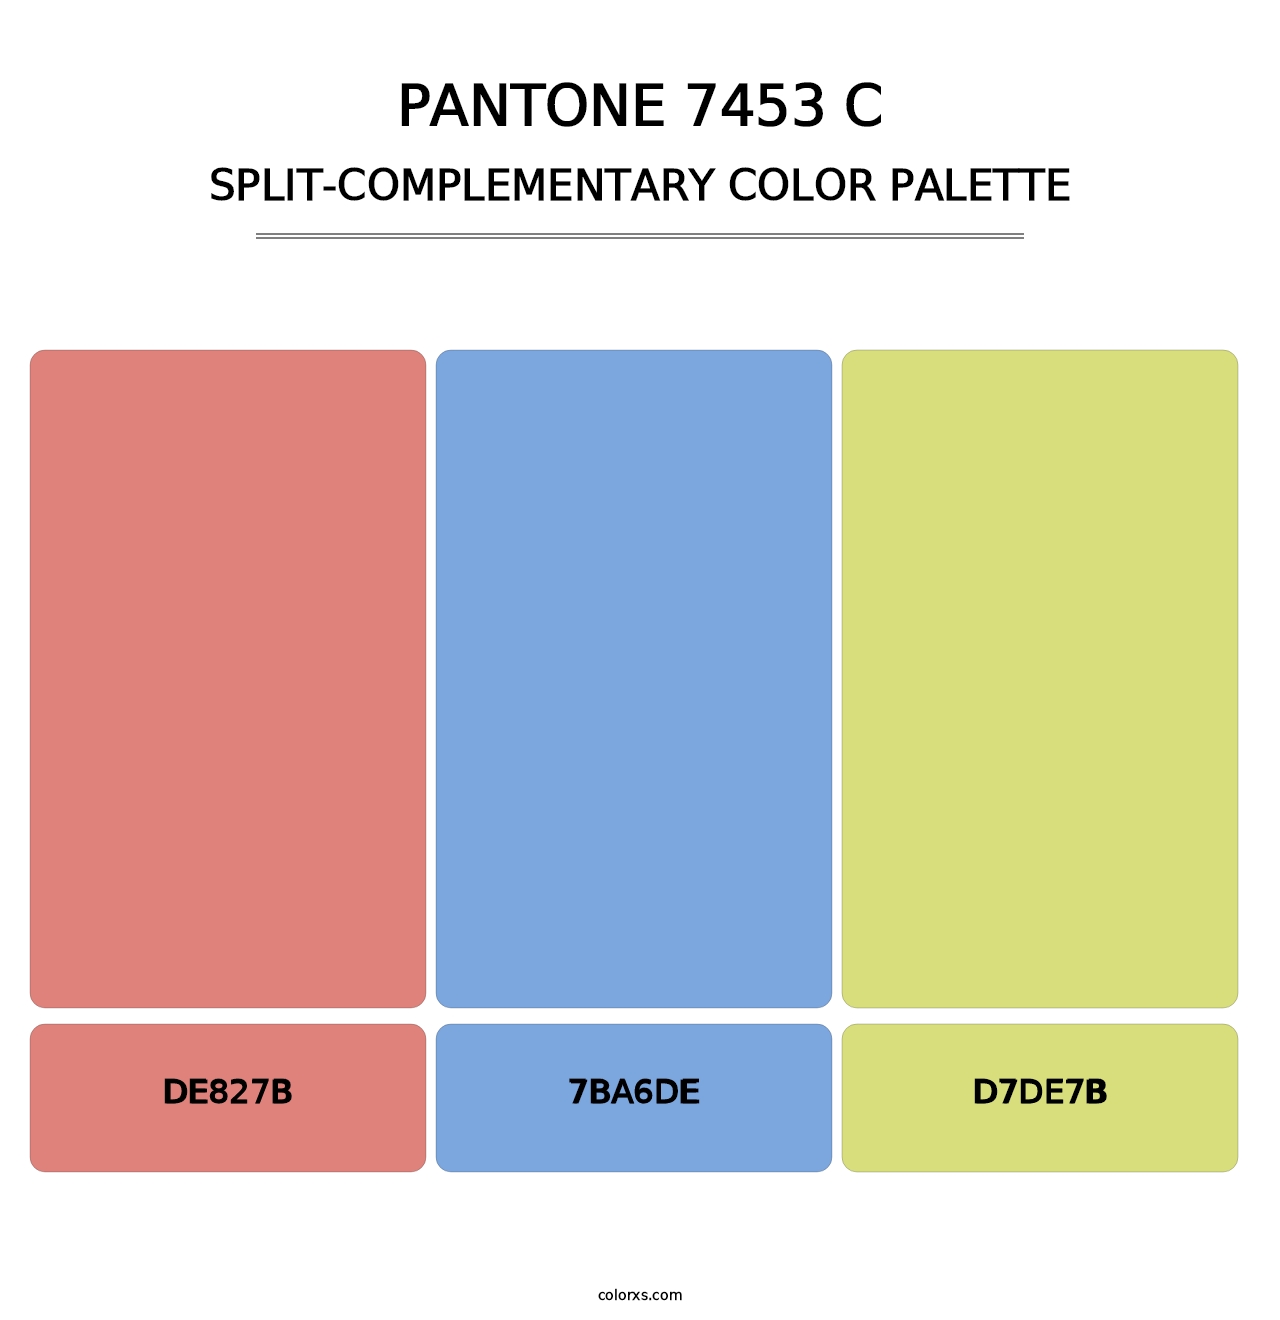 PANTONE 7453 C - Split-Complementary Color Palette